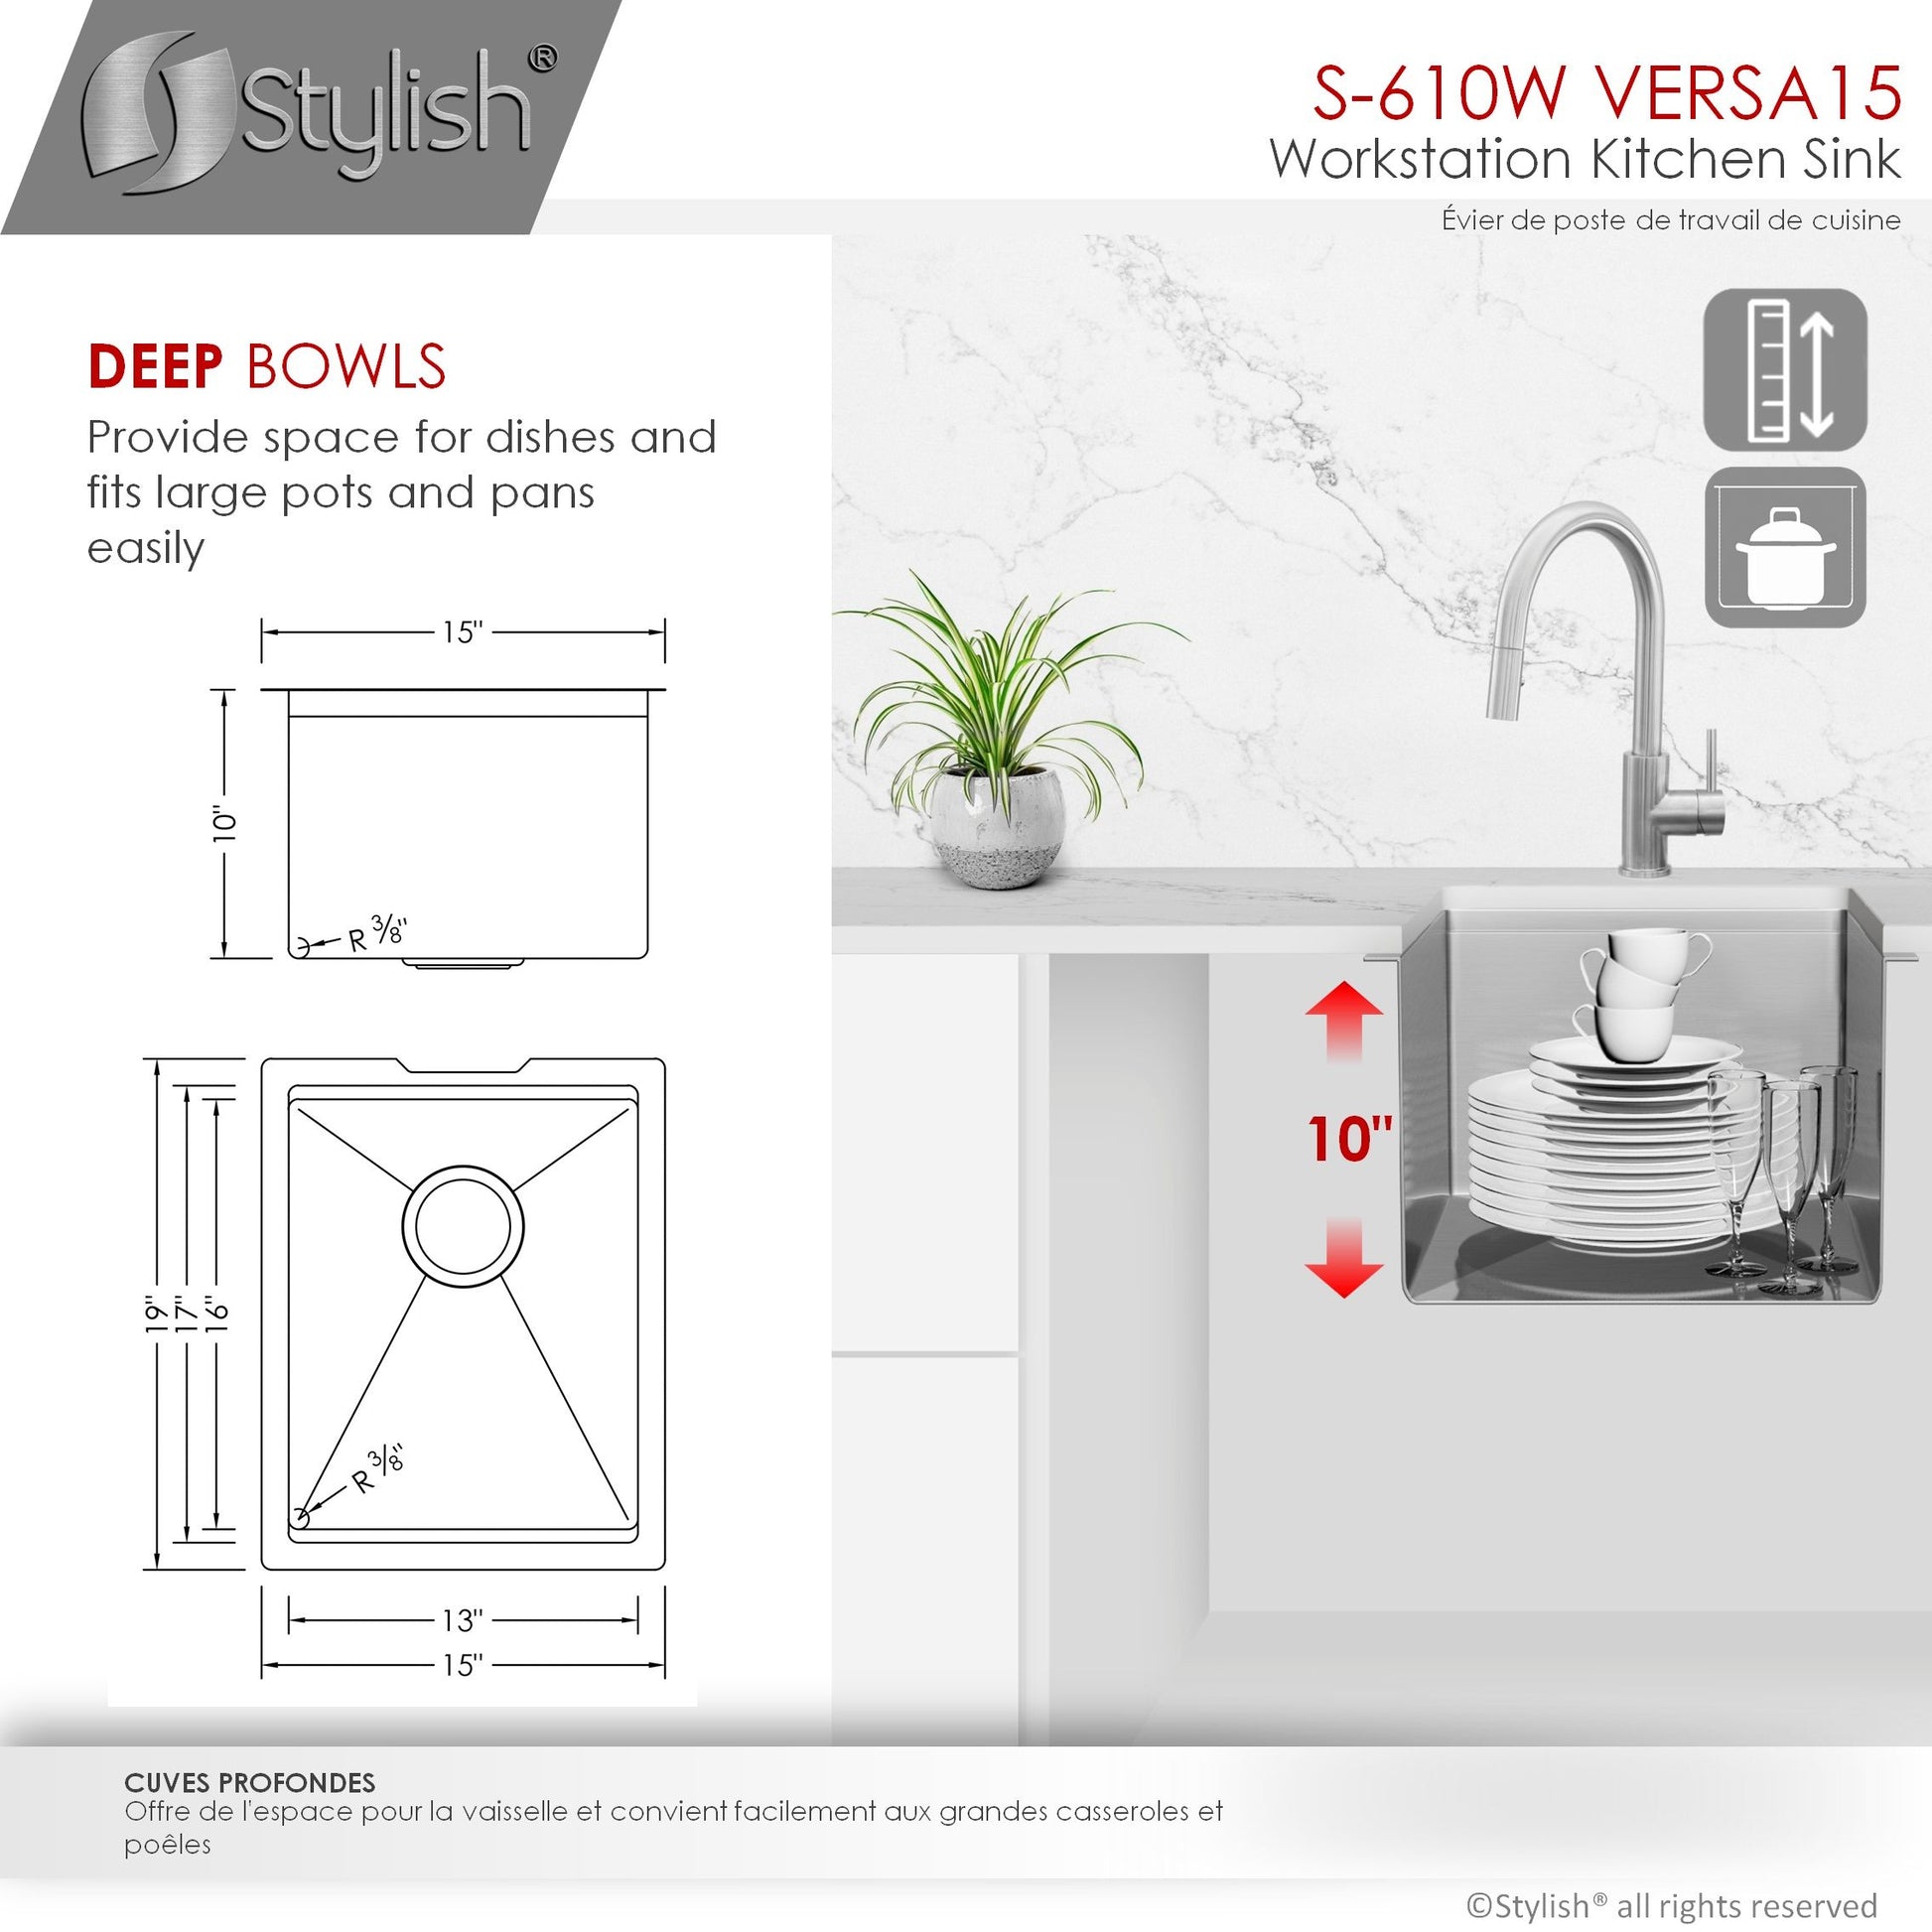 Stylish Versa15 15" x 19" Workstation Single Bowl Undermount 16 Gauge Stainless Steel Kitchen Sink with Built in Accessories S-610W - Renoz